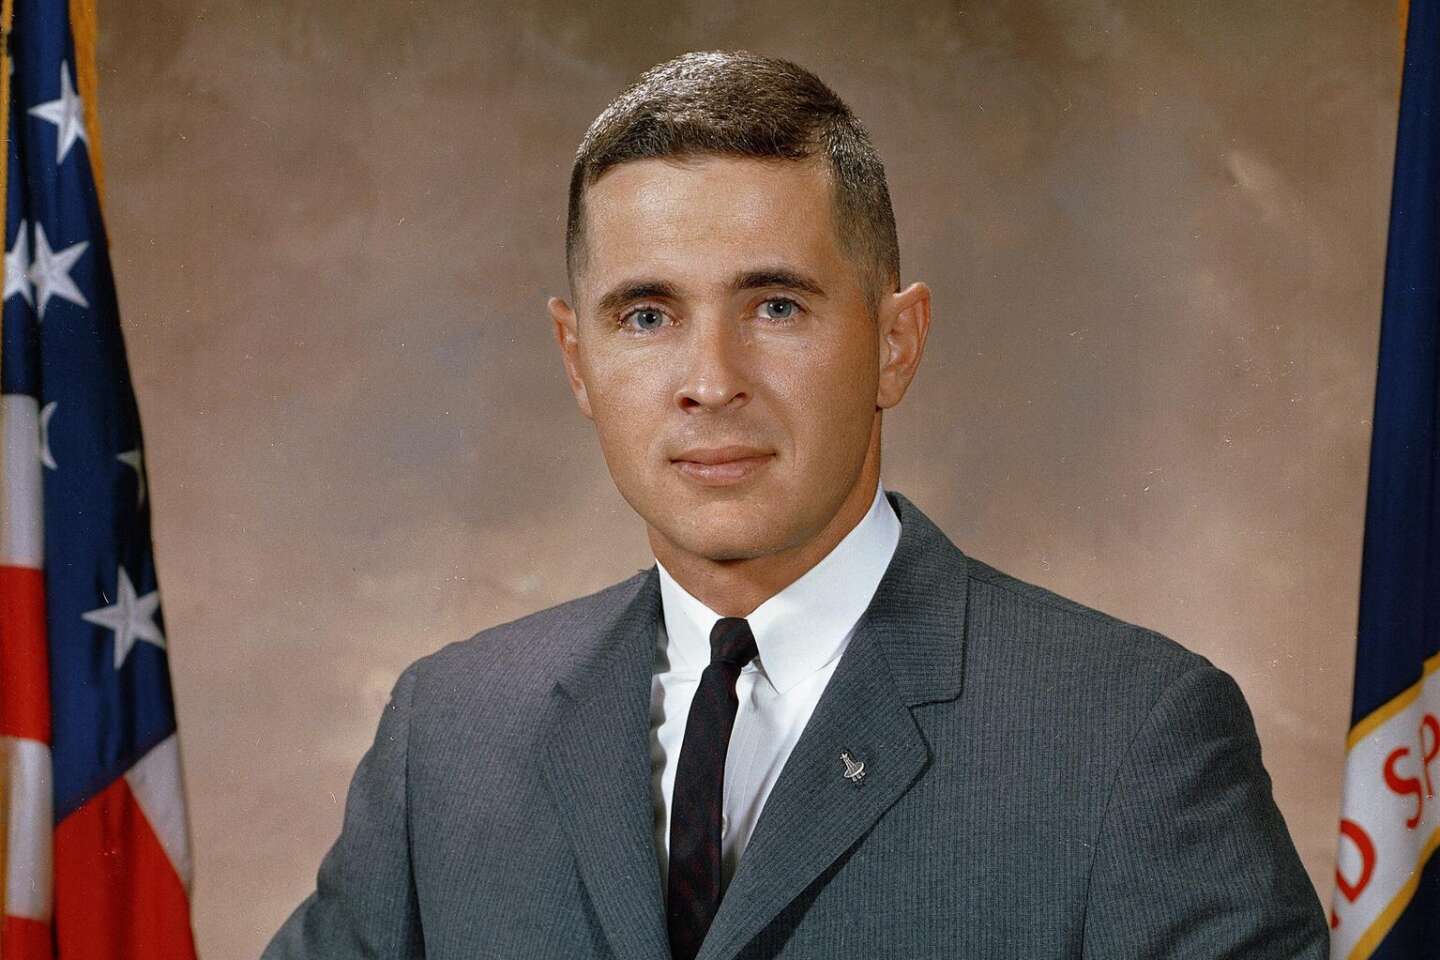 L’astronauta William Anders, membro della missione Apollo 8, è morto all’età di 90 anni in un incidente aereo